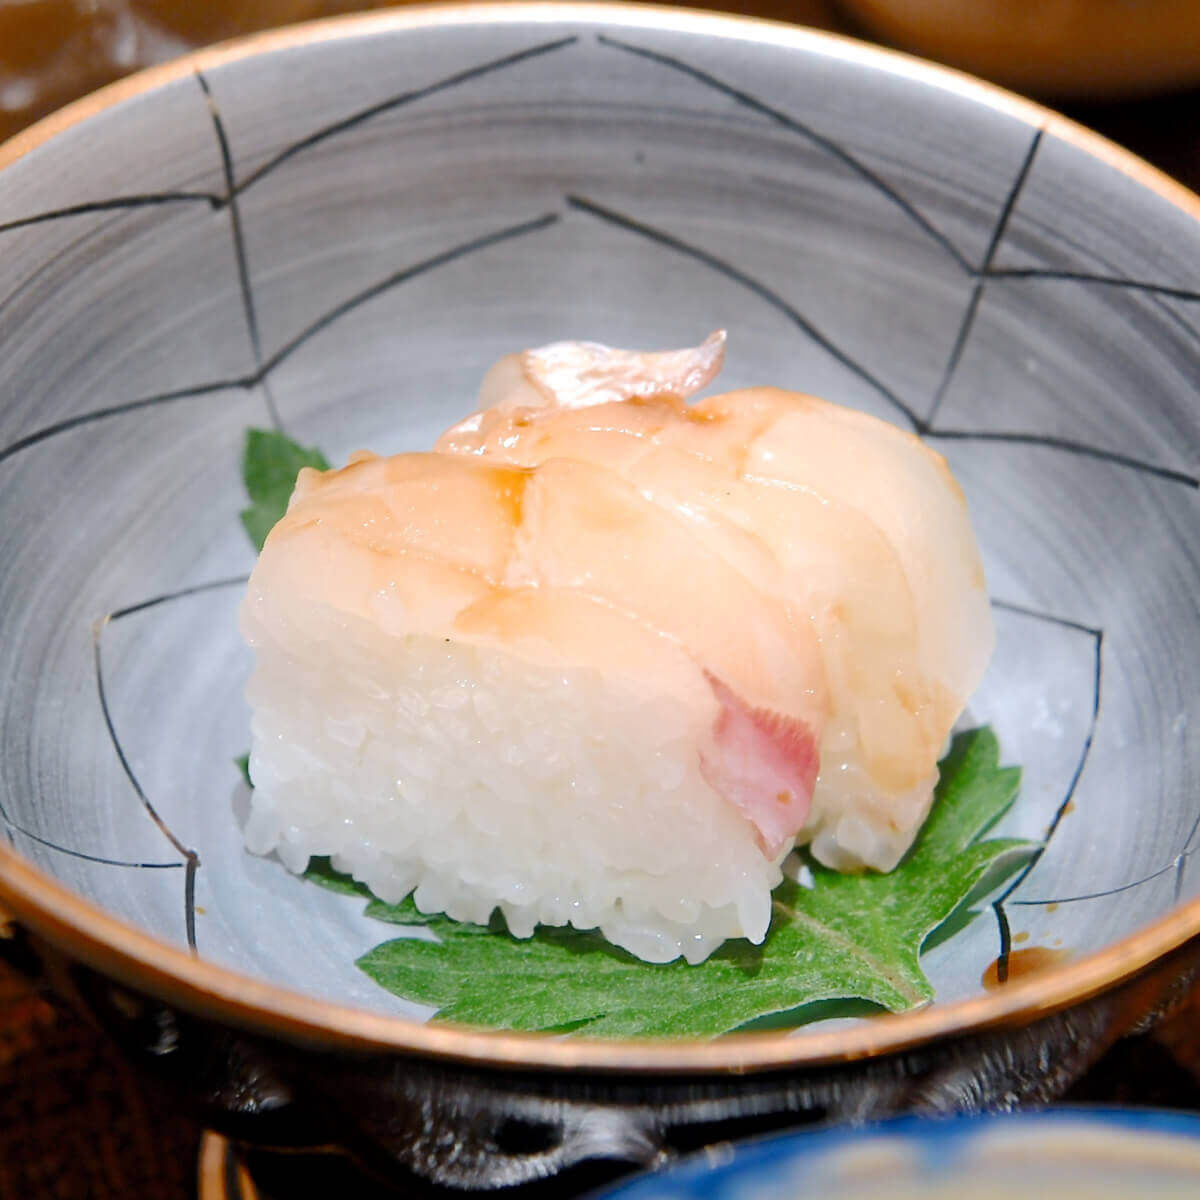 鯛の棒寿司